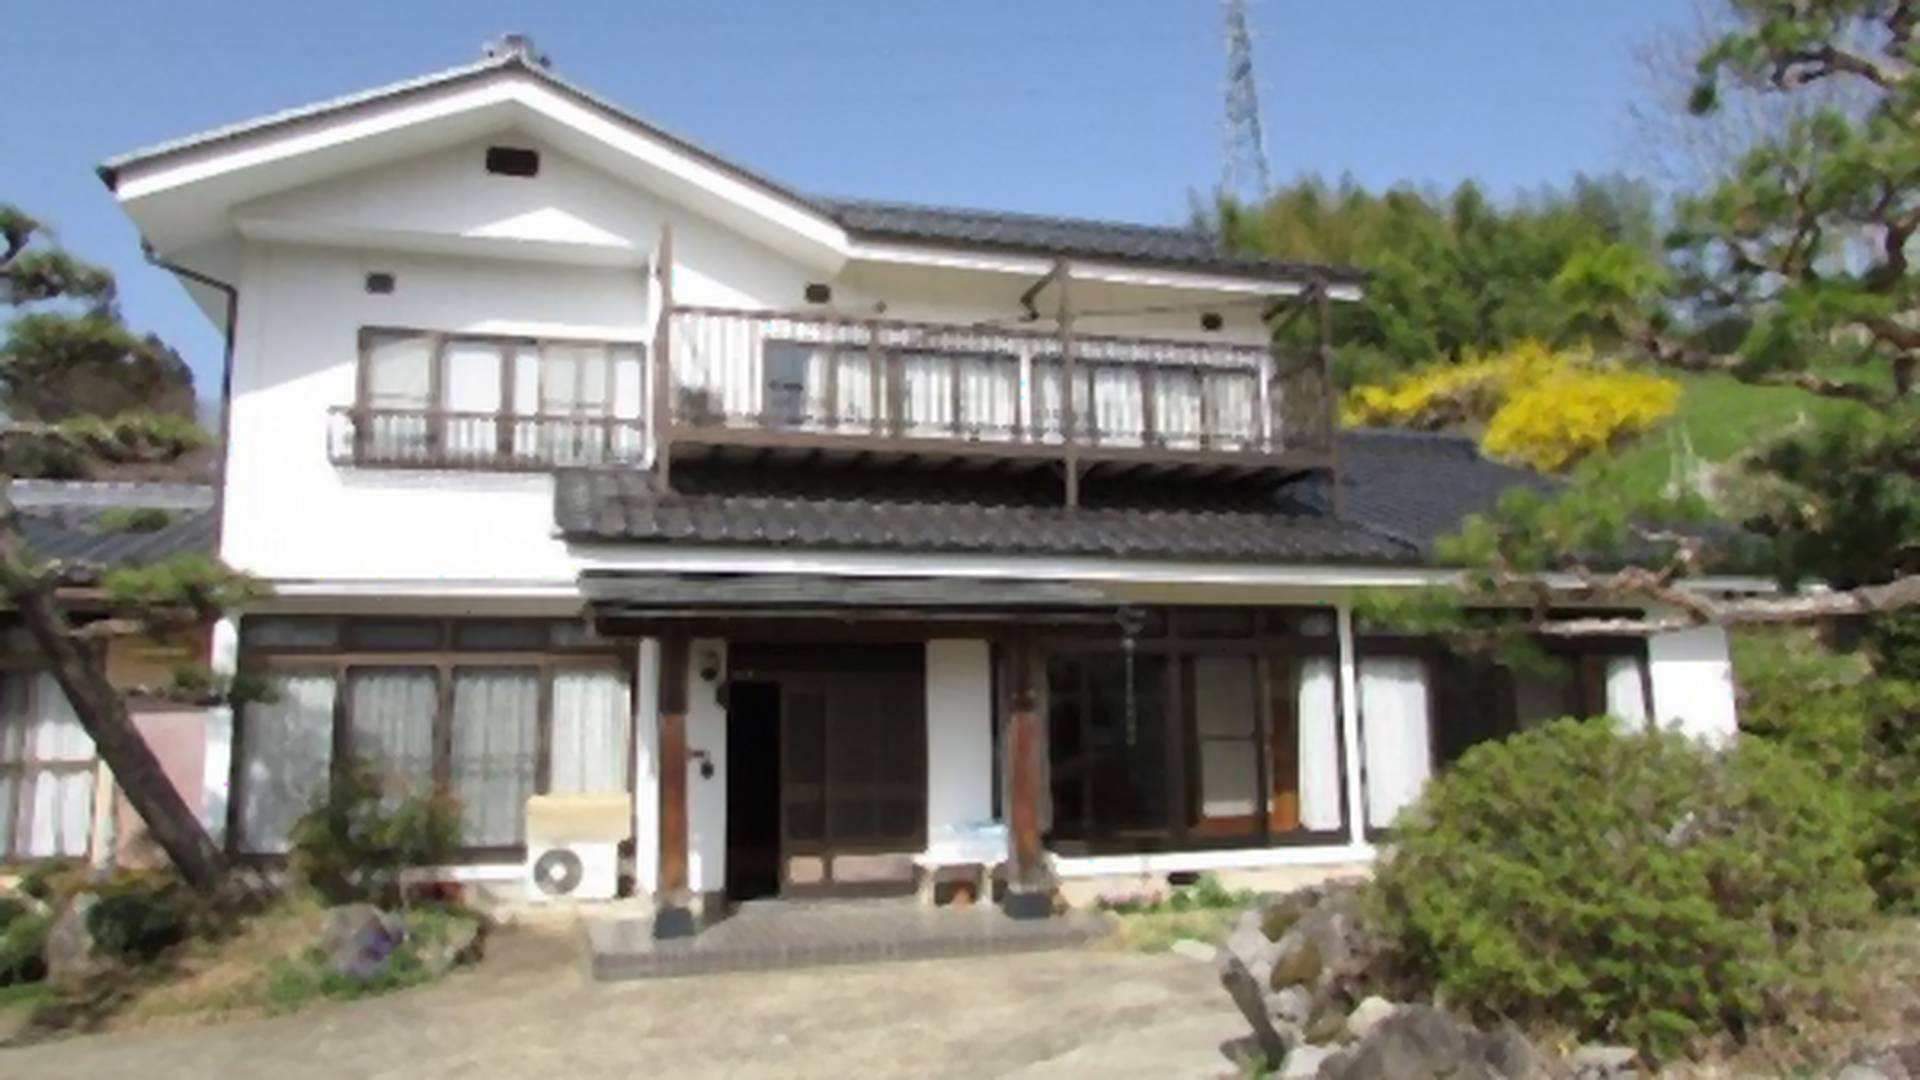 Taki dom można mieć za 1,7 tys. zł. W Japonii jest ich 8 mln